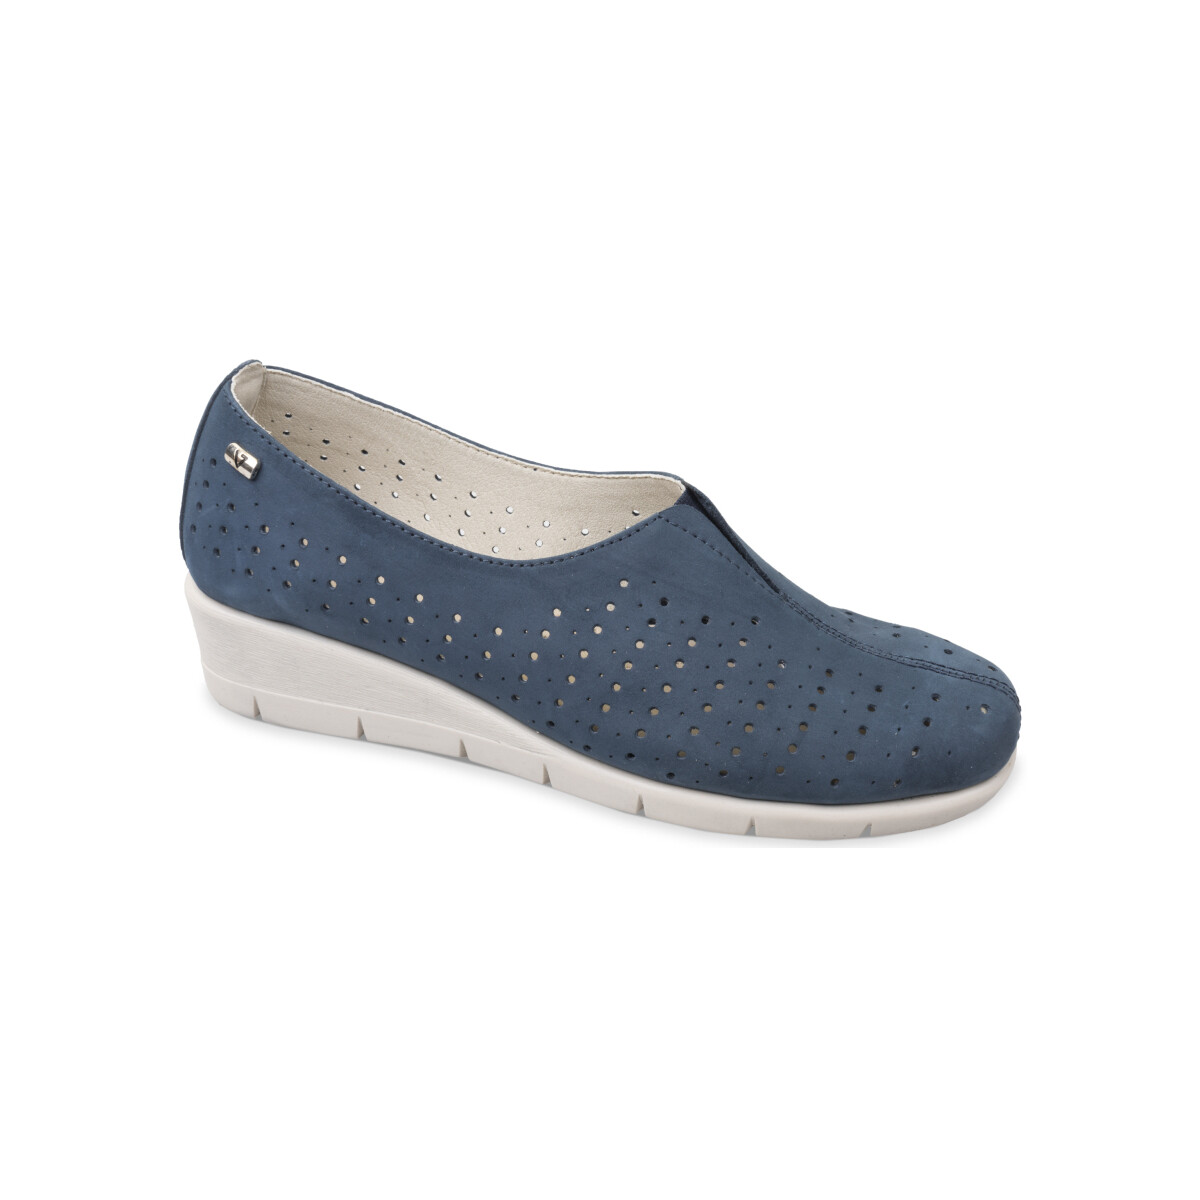 Chaussures Femme Mocassins Valleverde VS10205-1001 Bleu